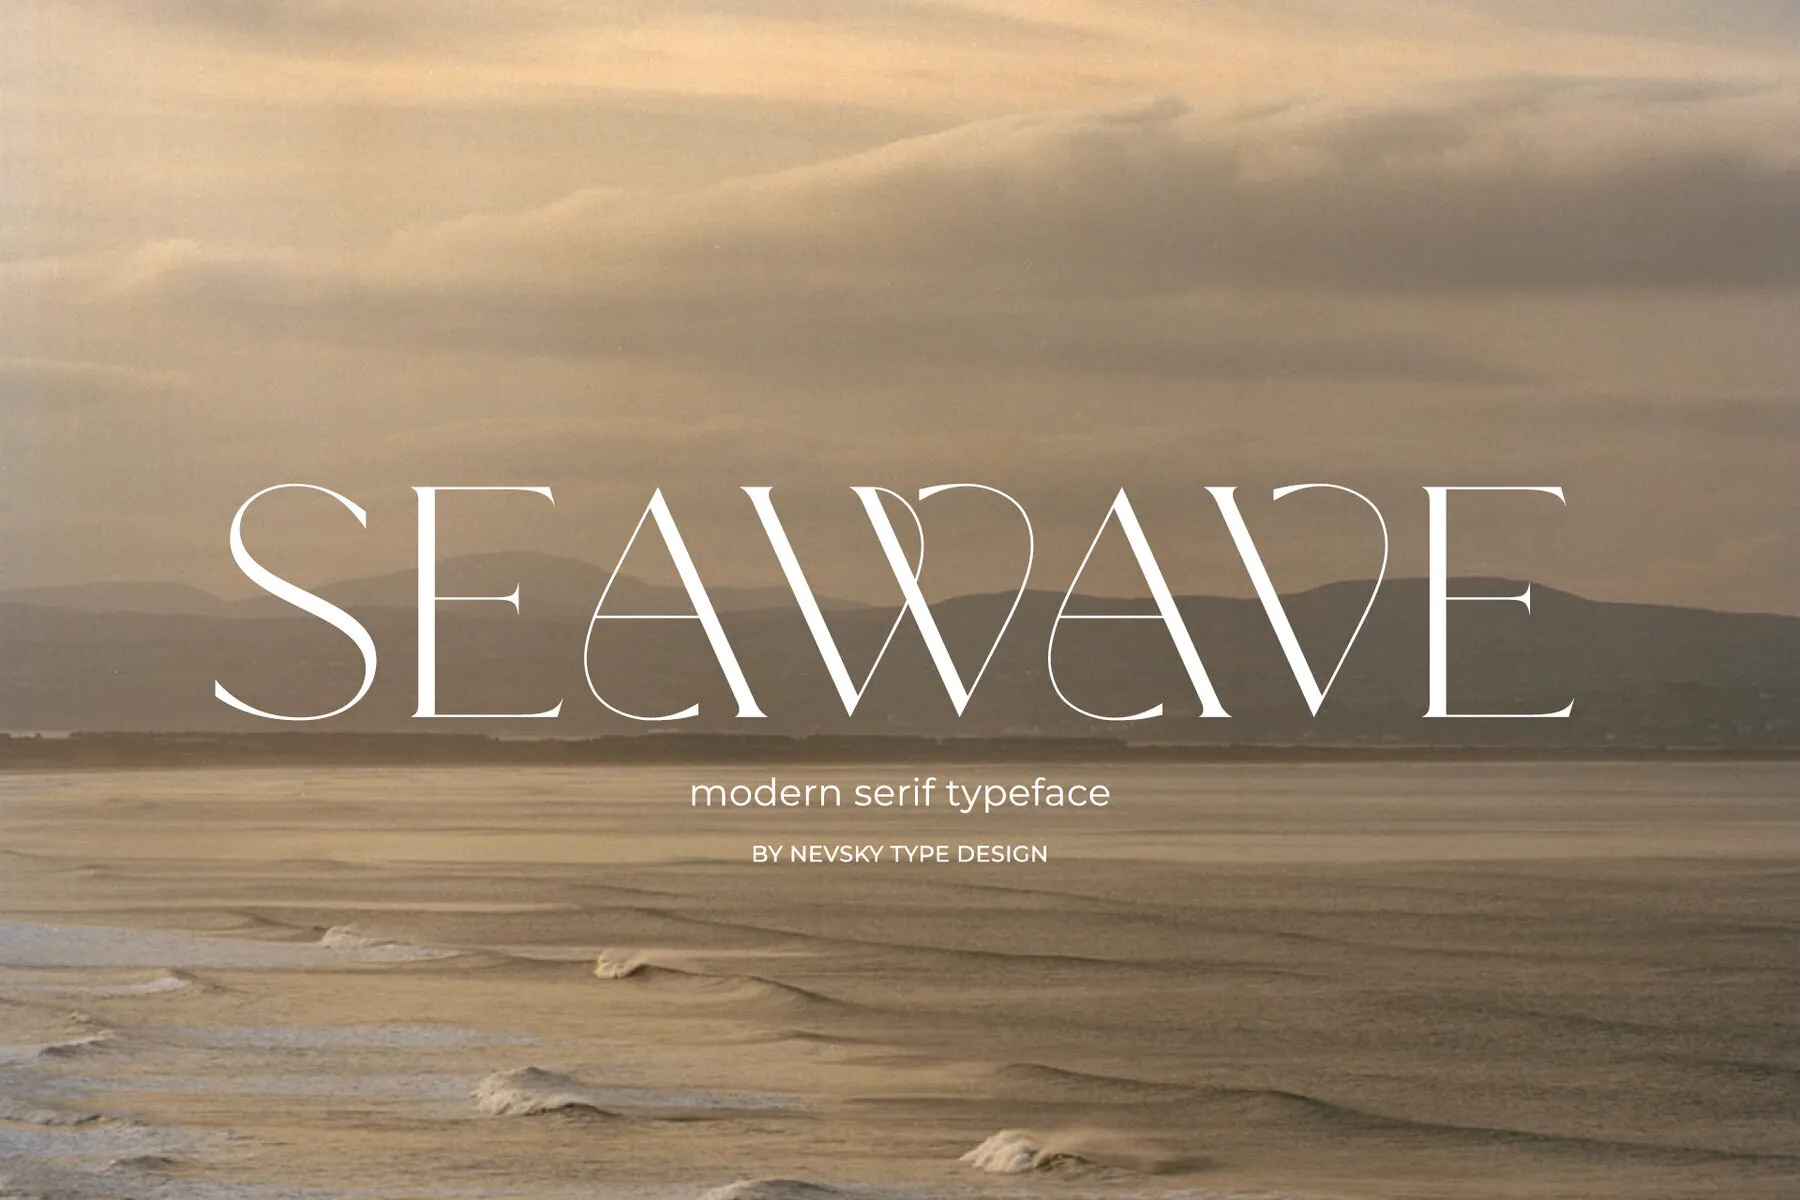 NT Seawave